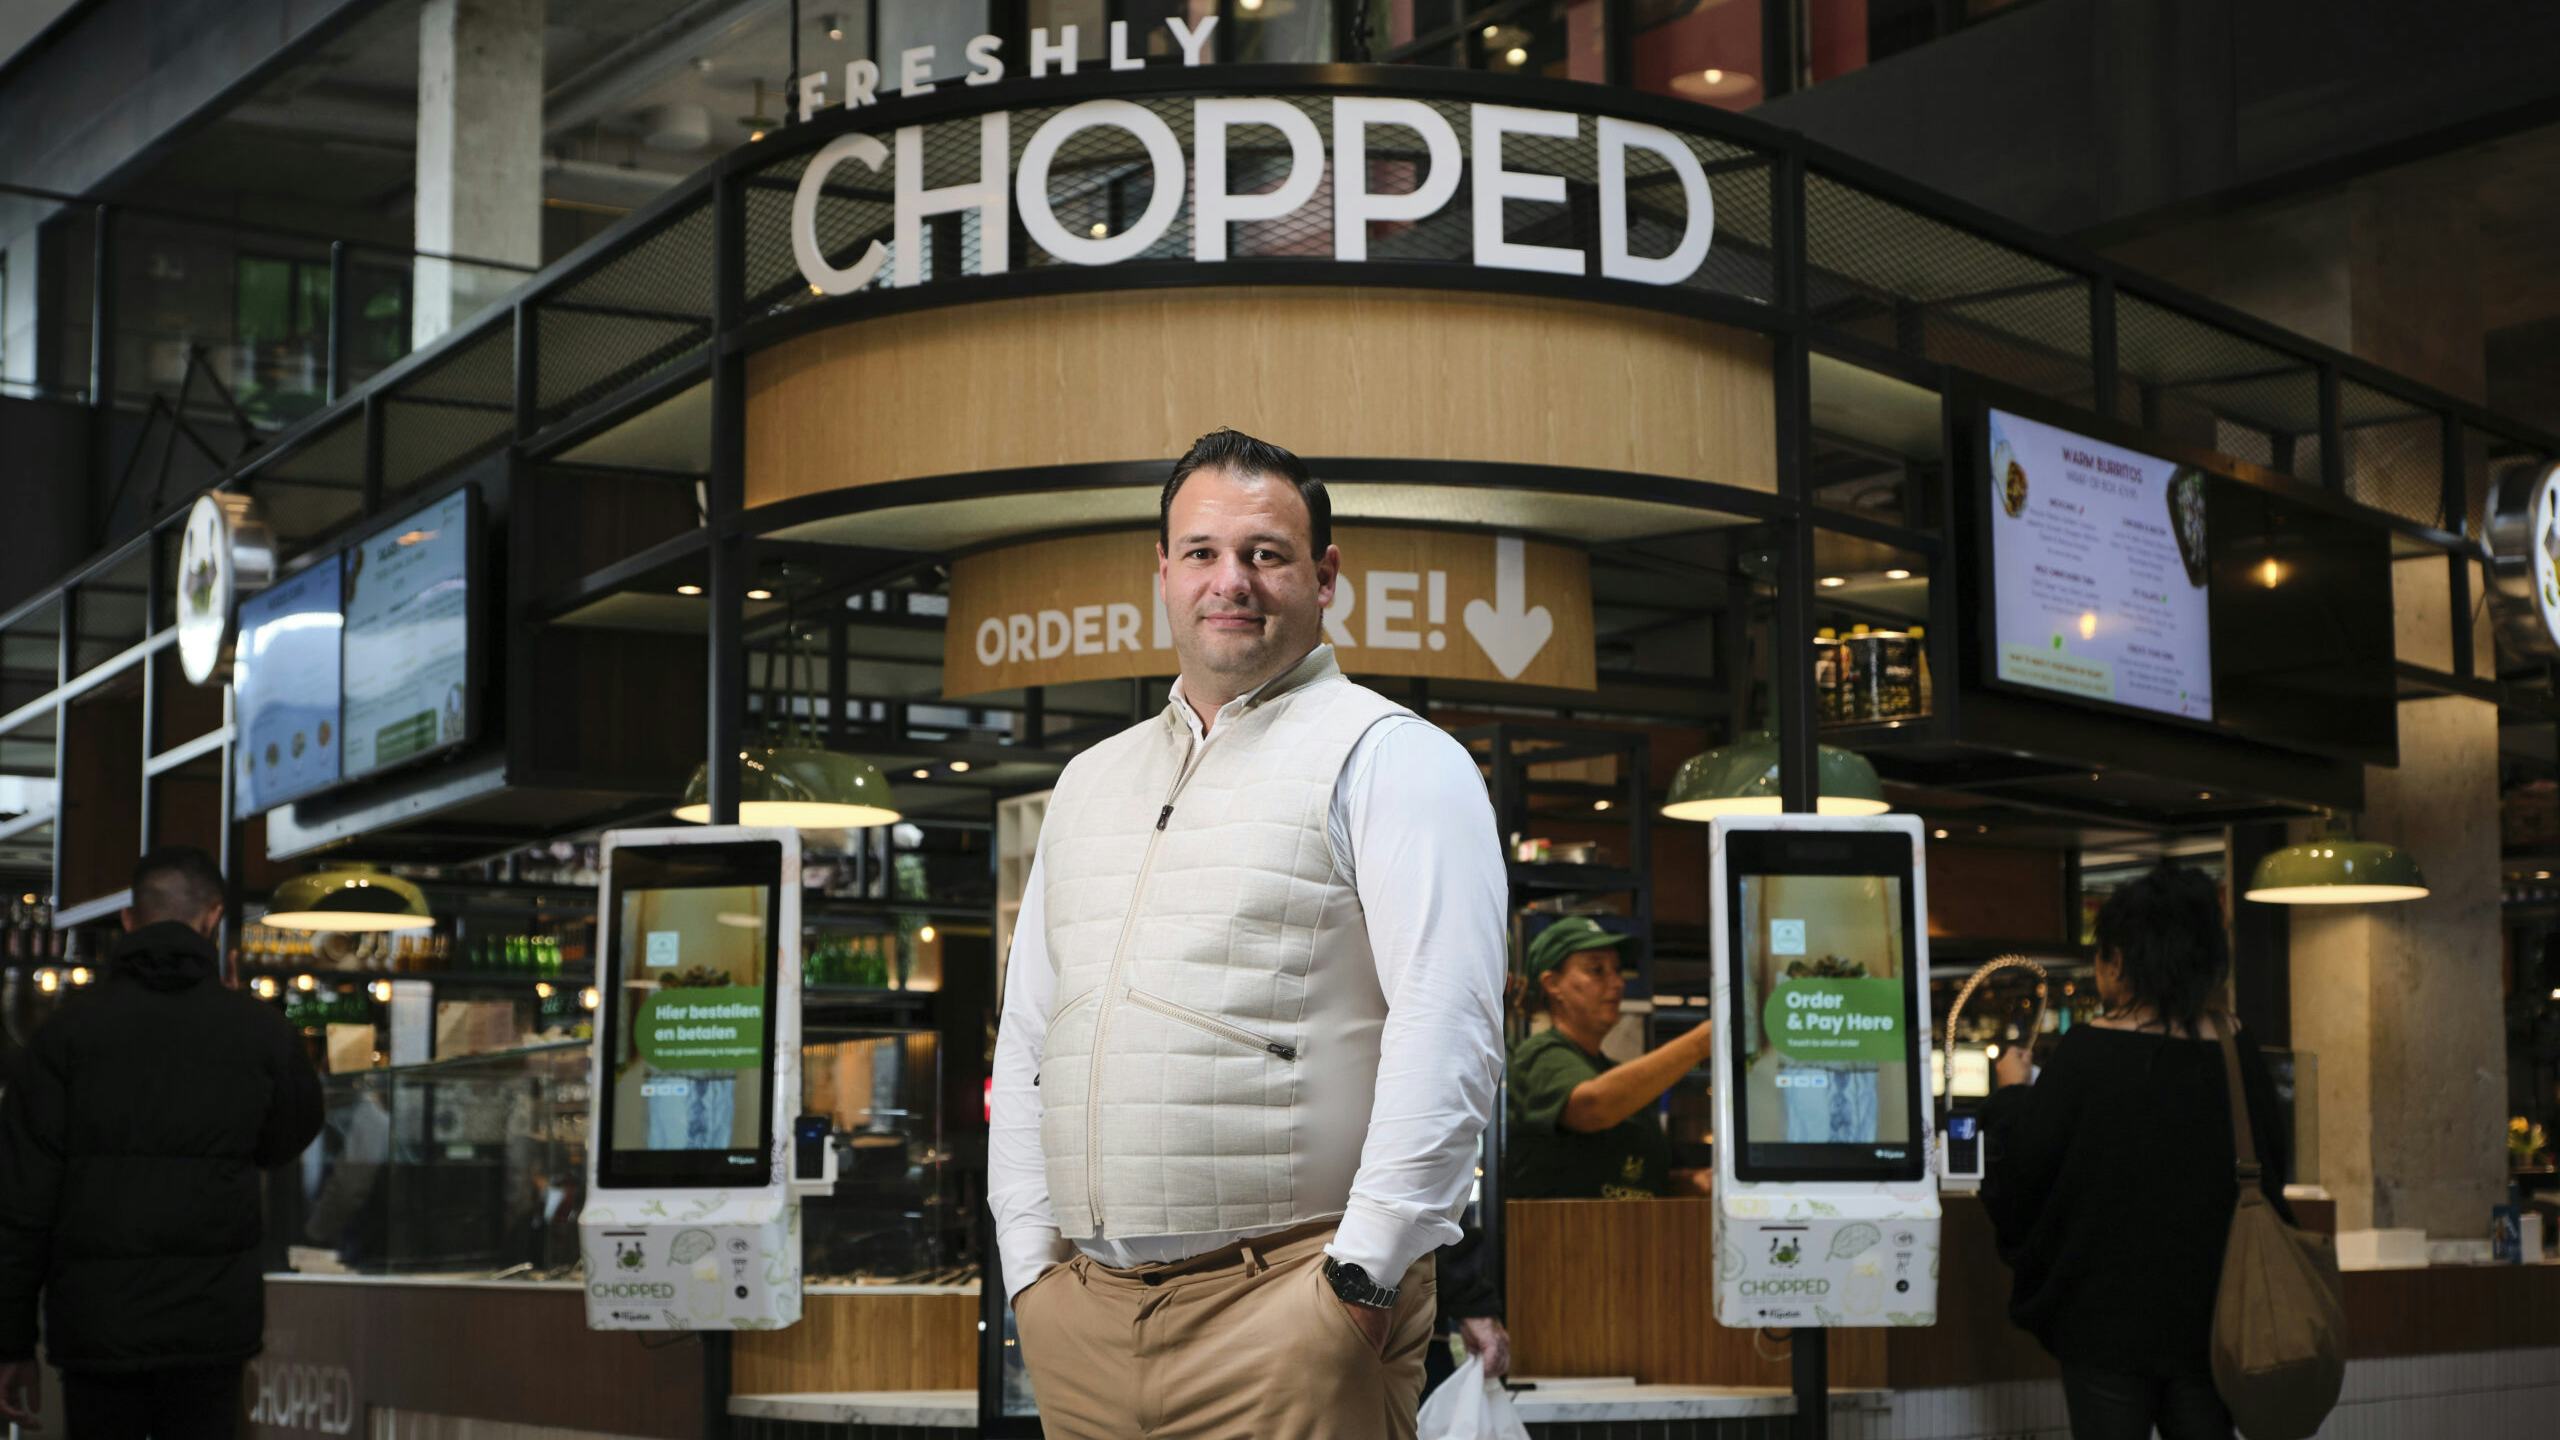 Rens van der Linden voor de nieuwe vestiging van Freshly Chopped in The Mall of the Netherlands. Foto: Fred Libochant / DCI Media